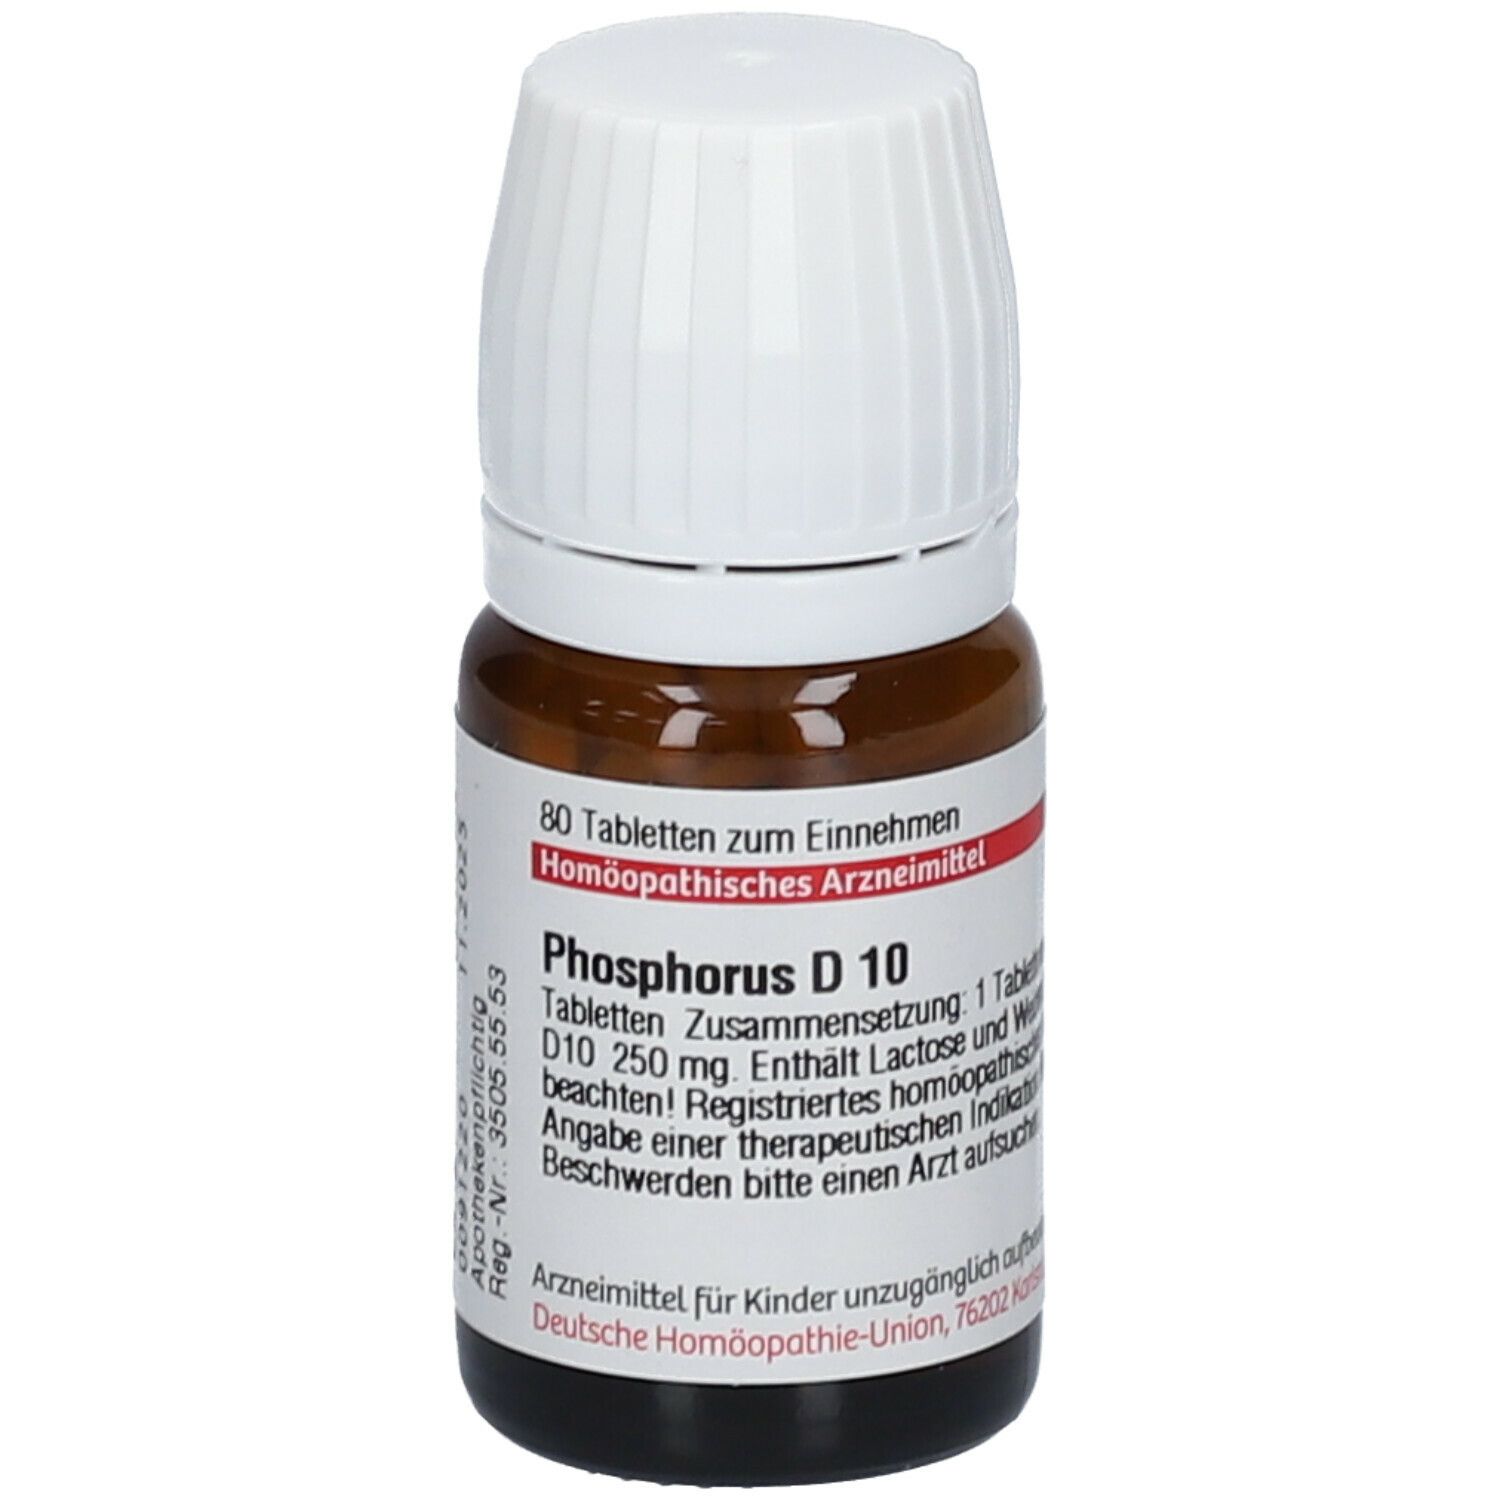 DHU Phosphorus D10